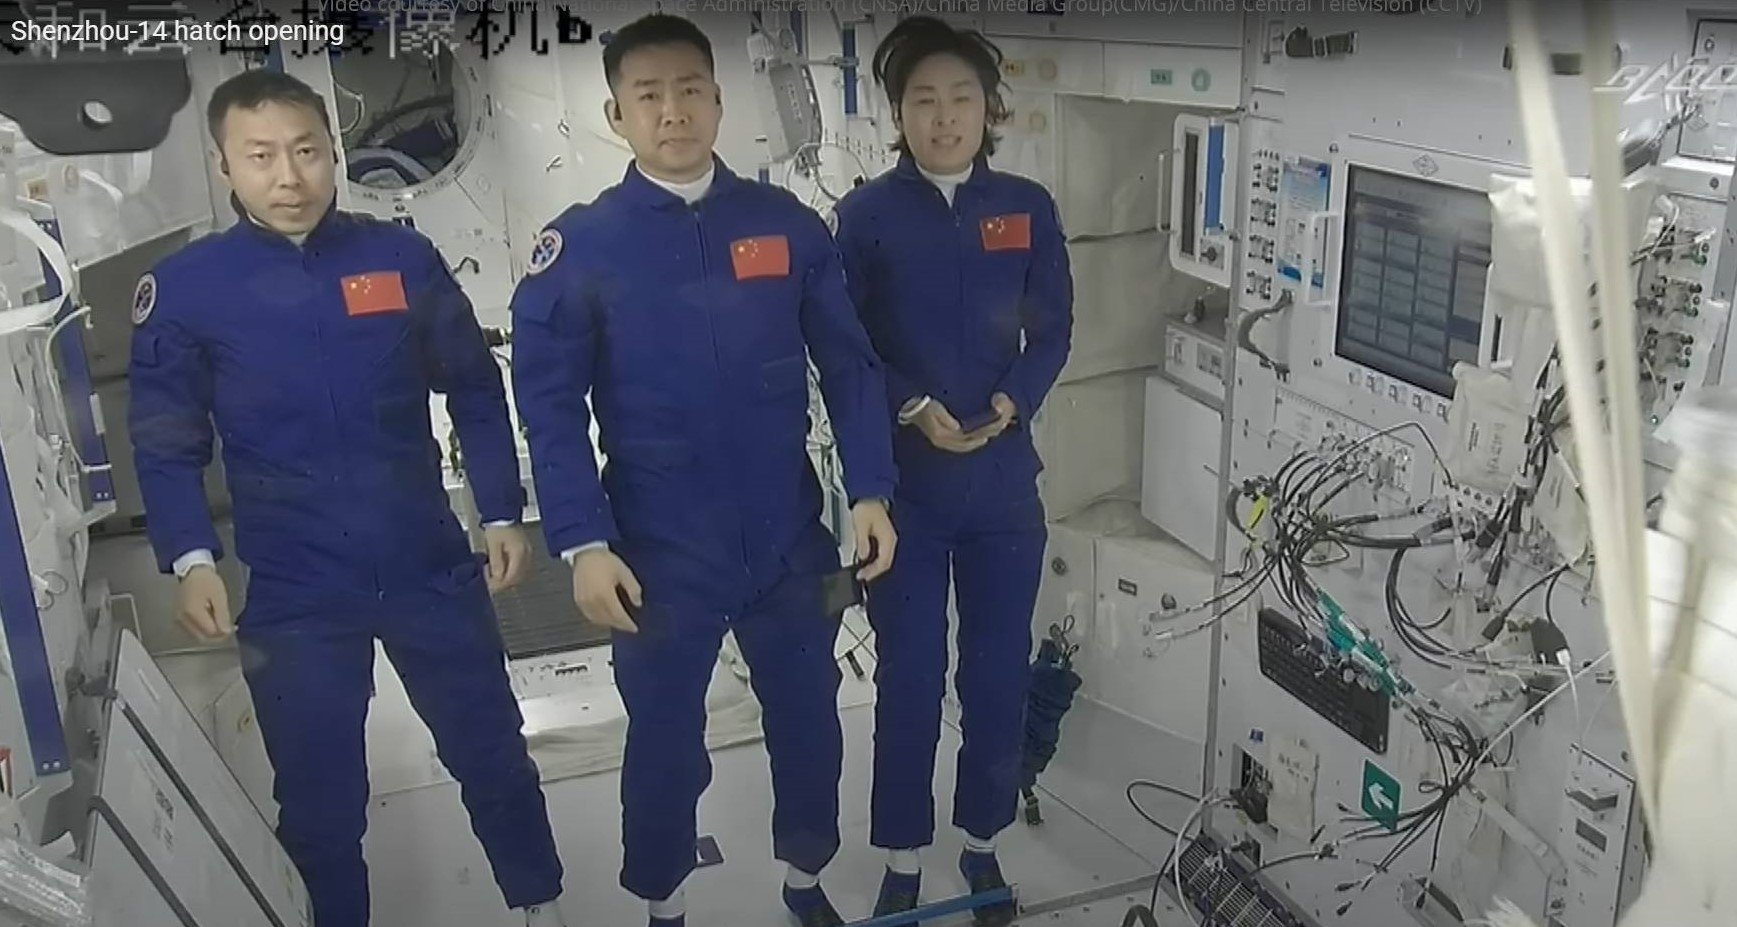 China's Shenzhou 14 astronauts set to return to Earth on Sunday